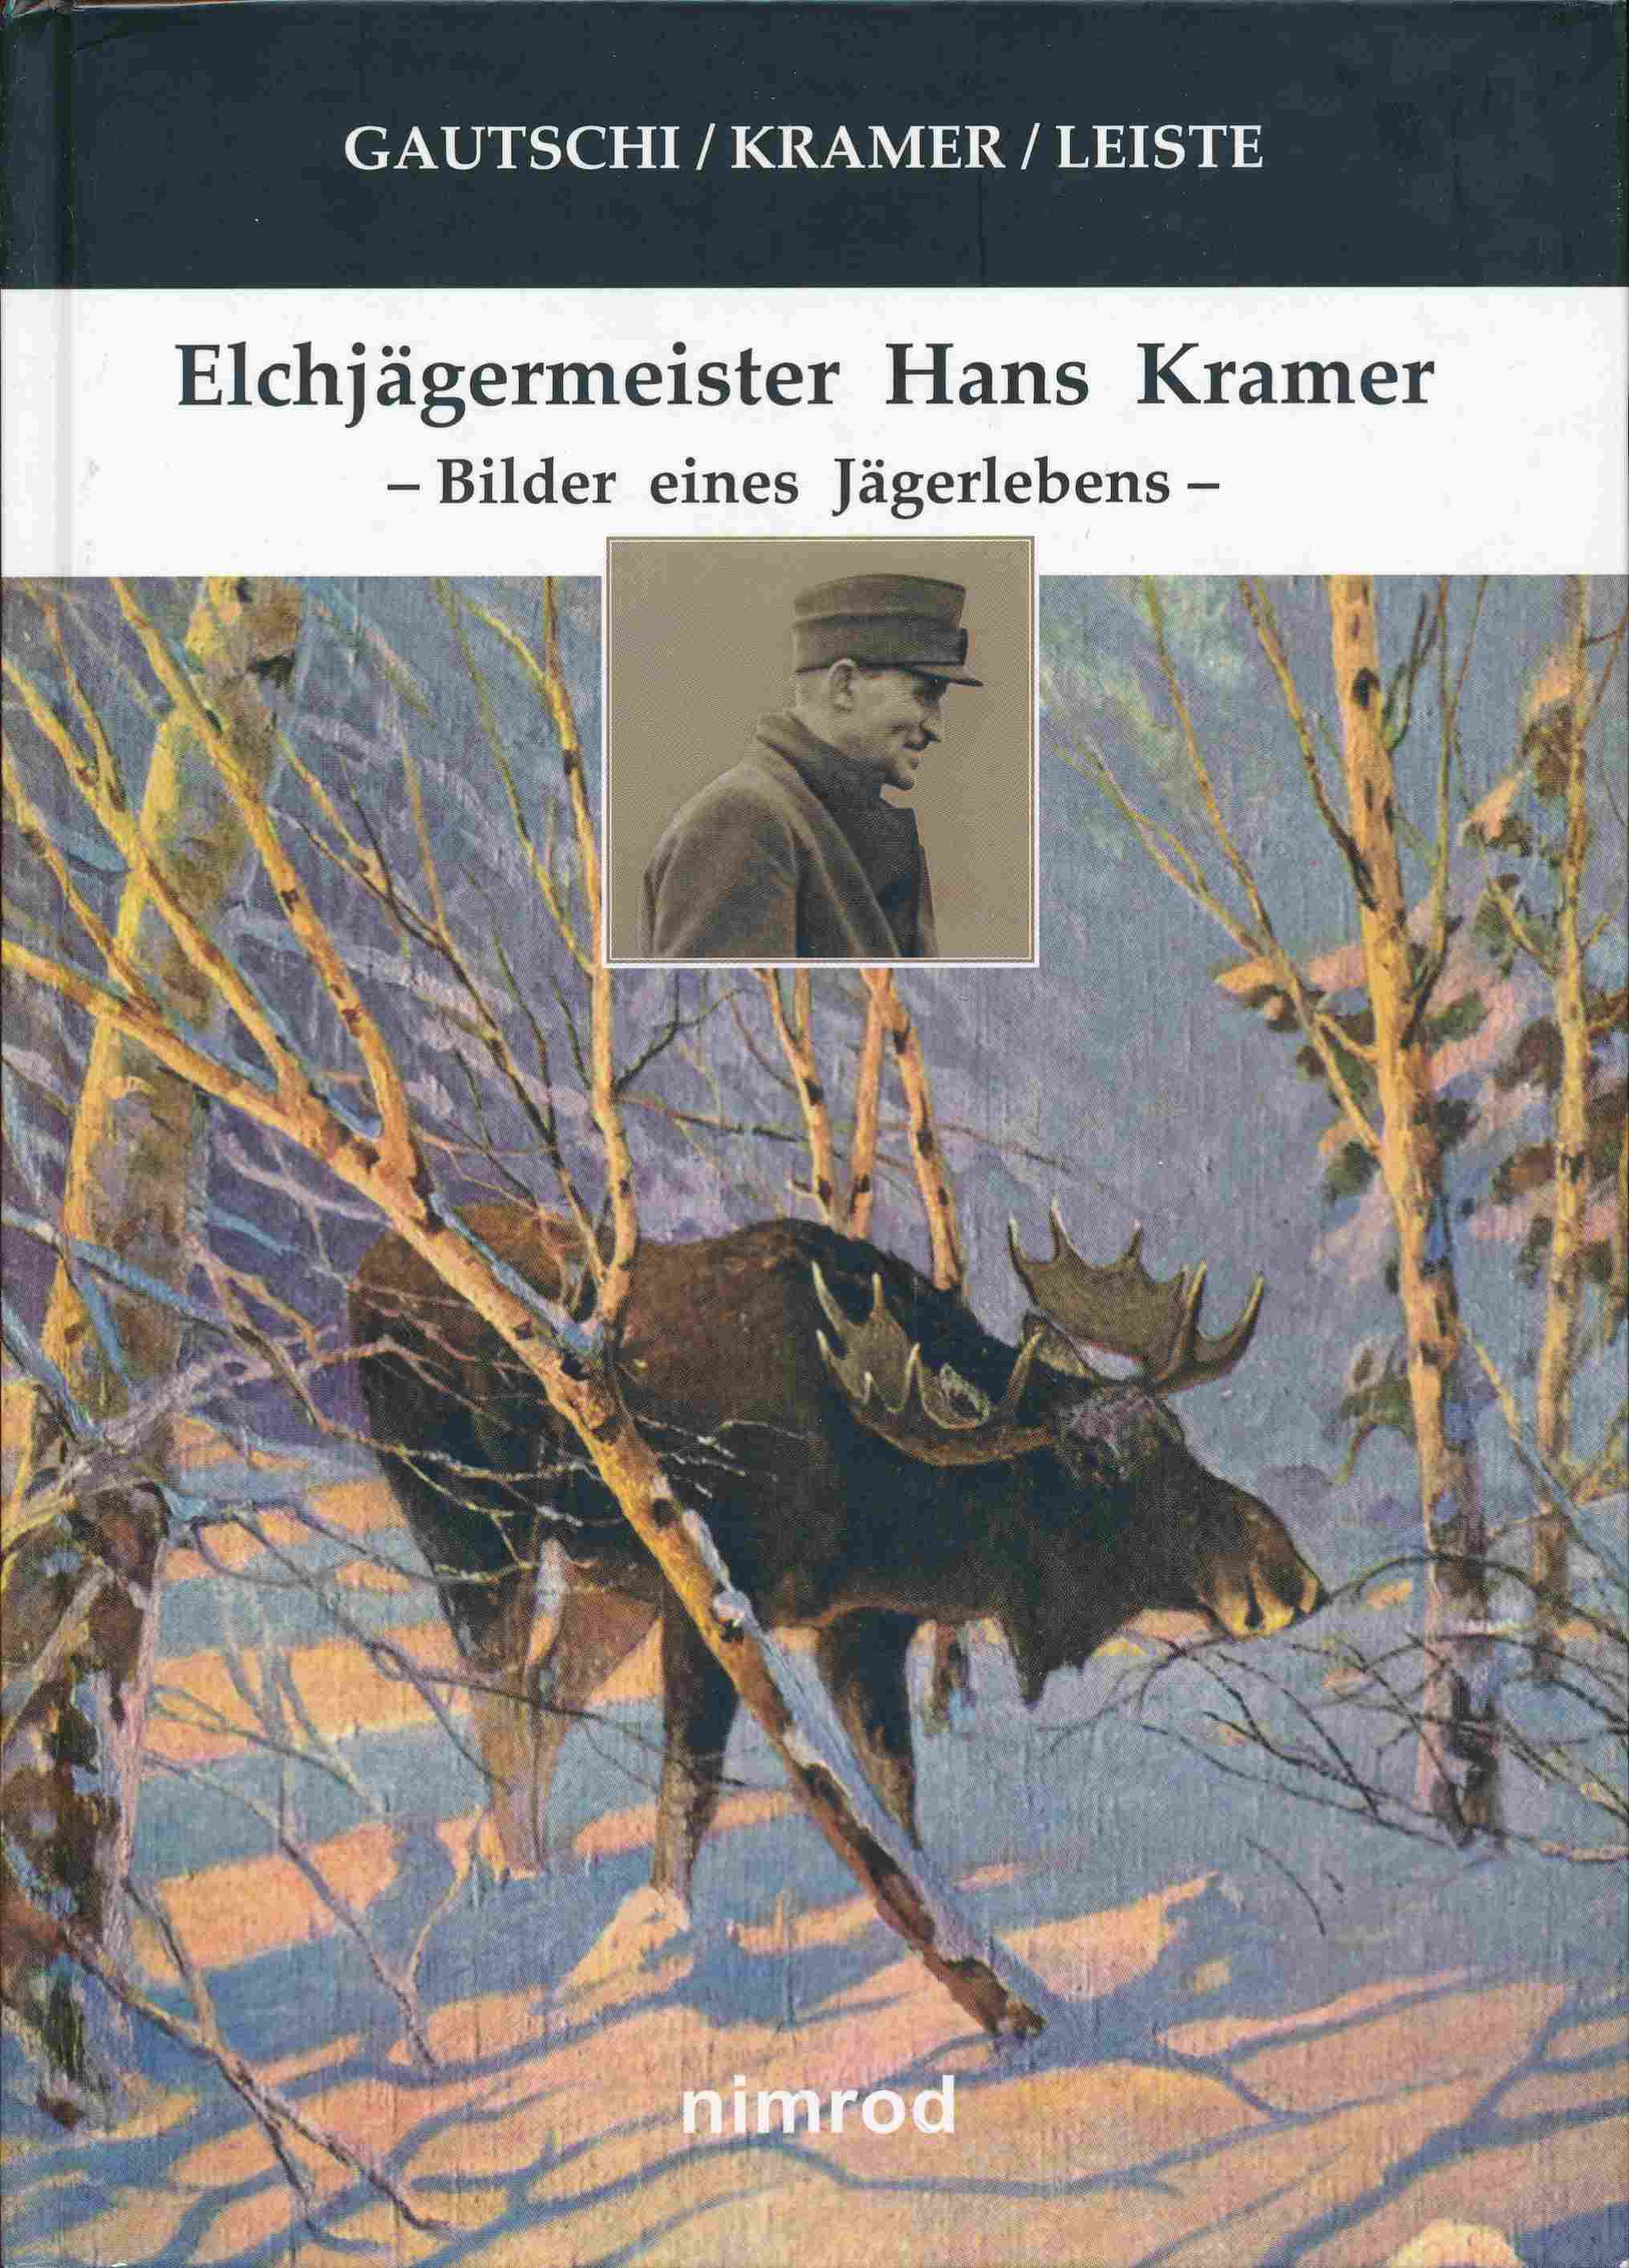 Elchjägermeister Hans Kramer. Bilder eines Jägerlebens. - Gautschi, Andreas